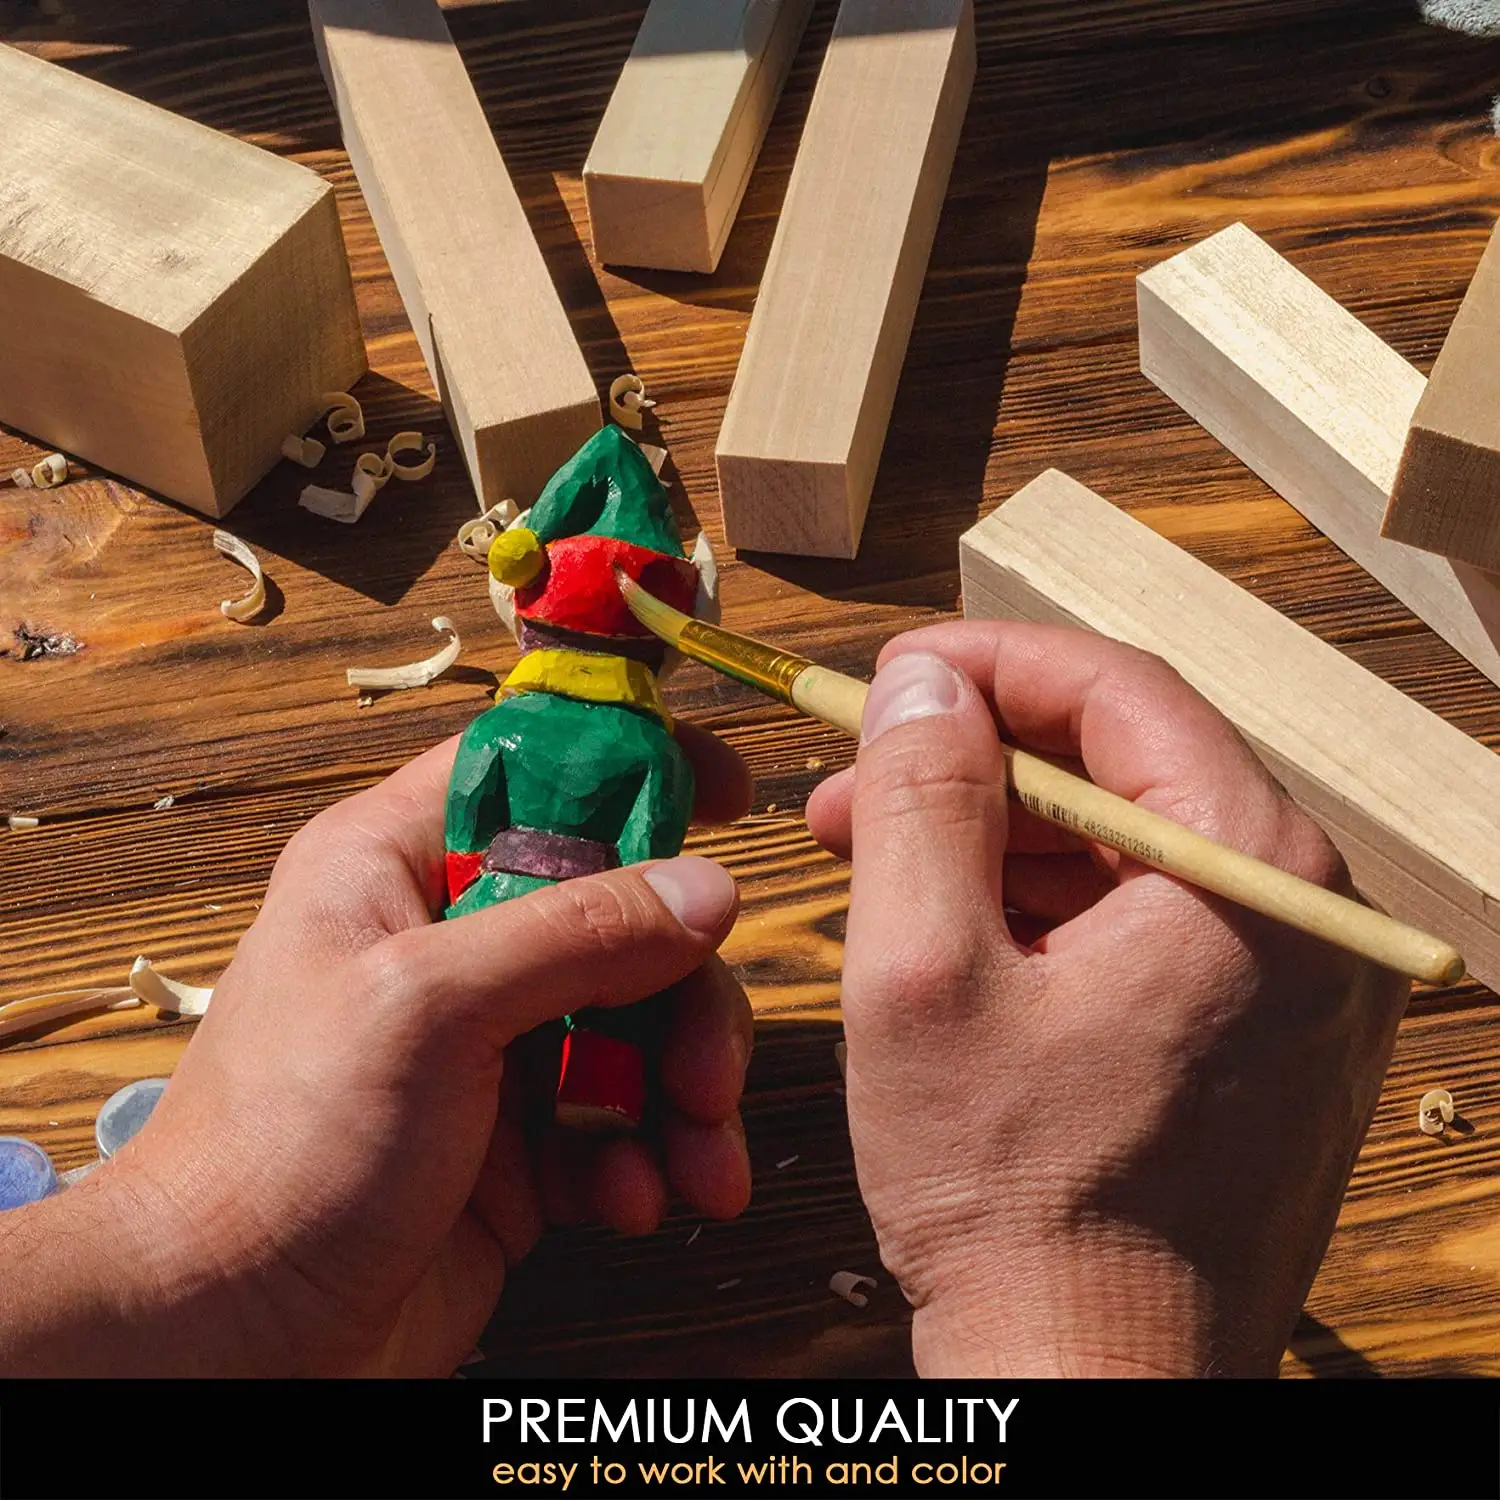 2x2x6 "Artesanías de madera sin terminar tilo tallado bloque traje horno secado blanqueamiento corcho tallado bloque